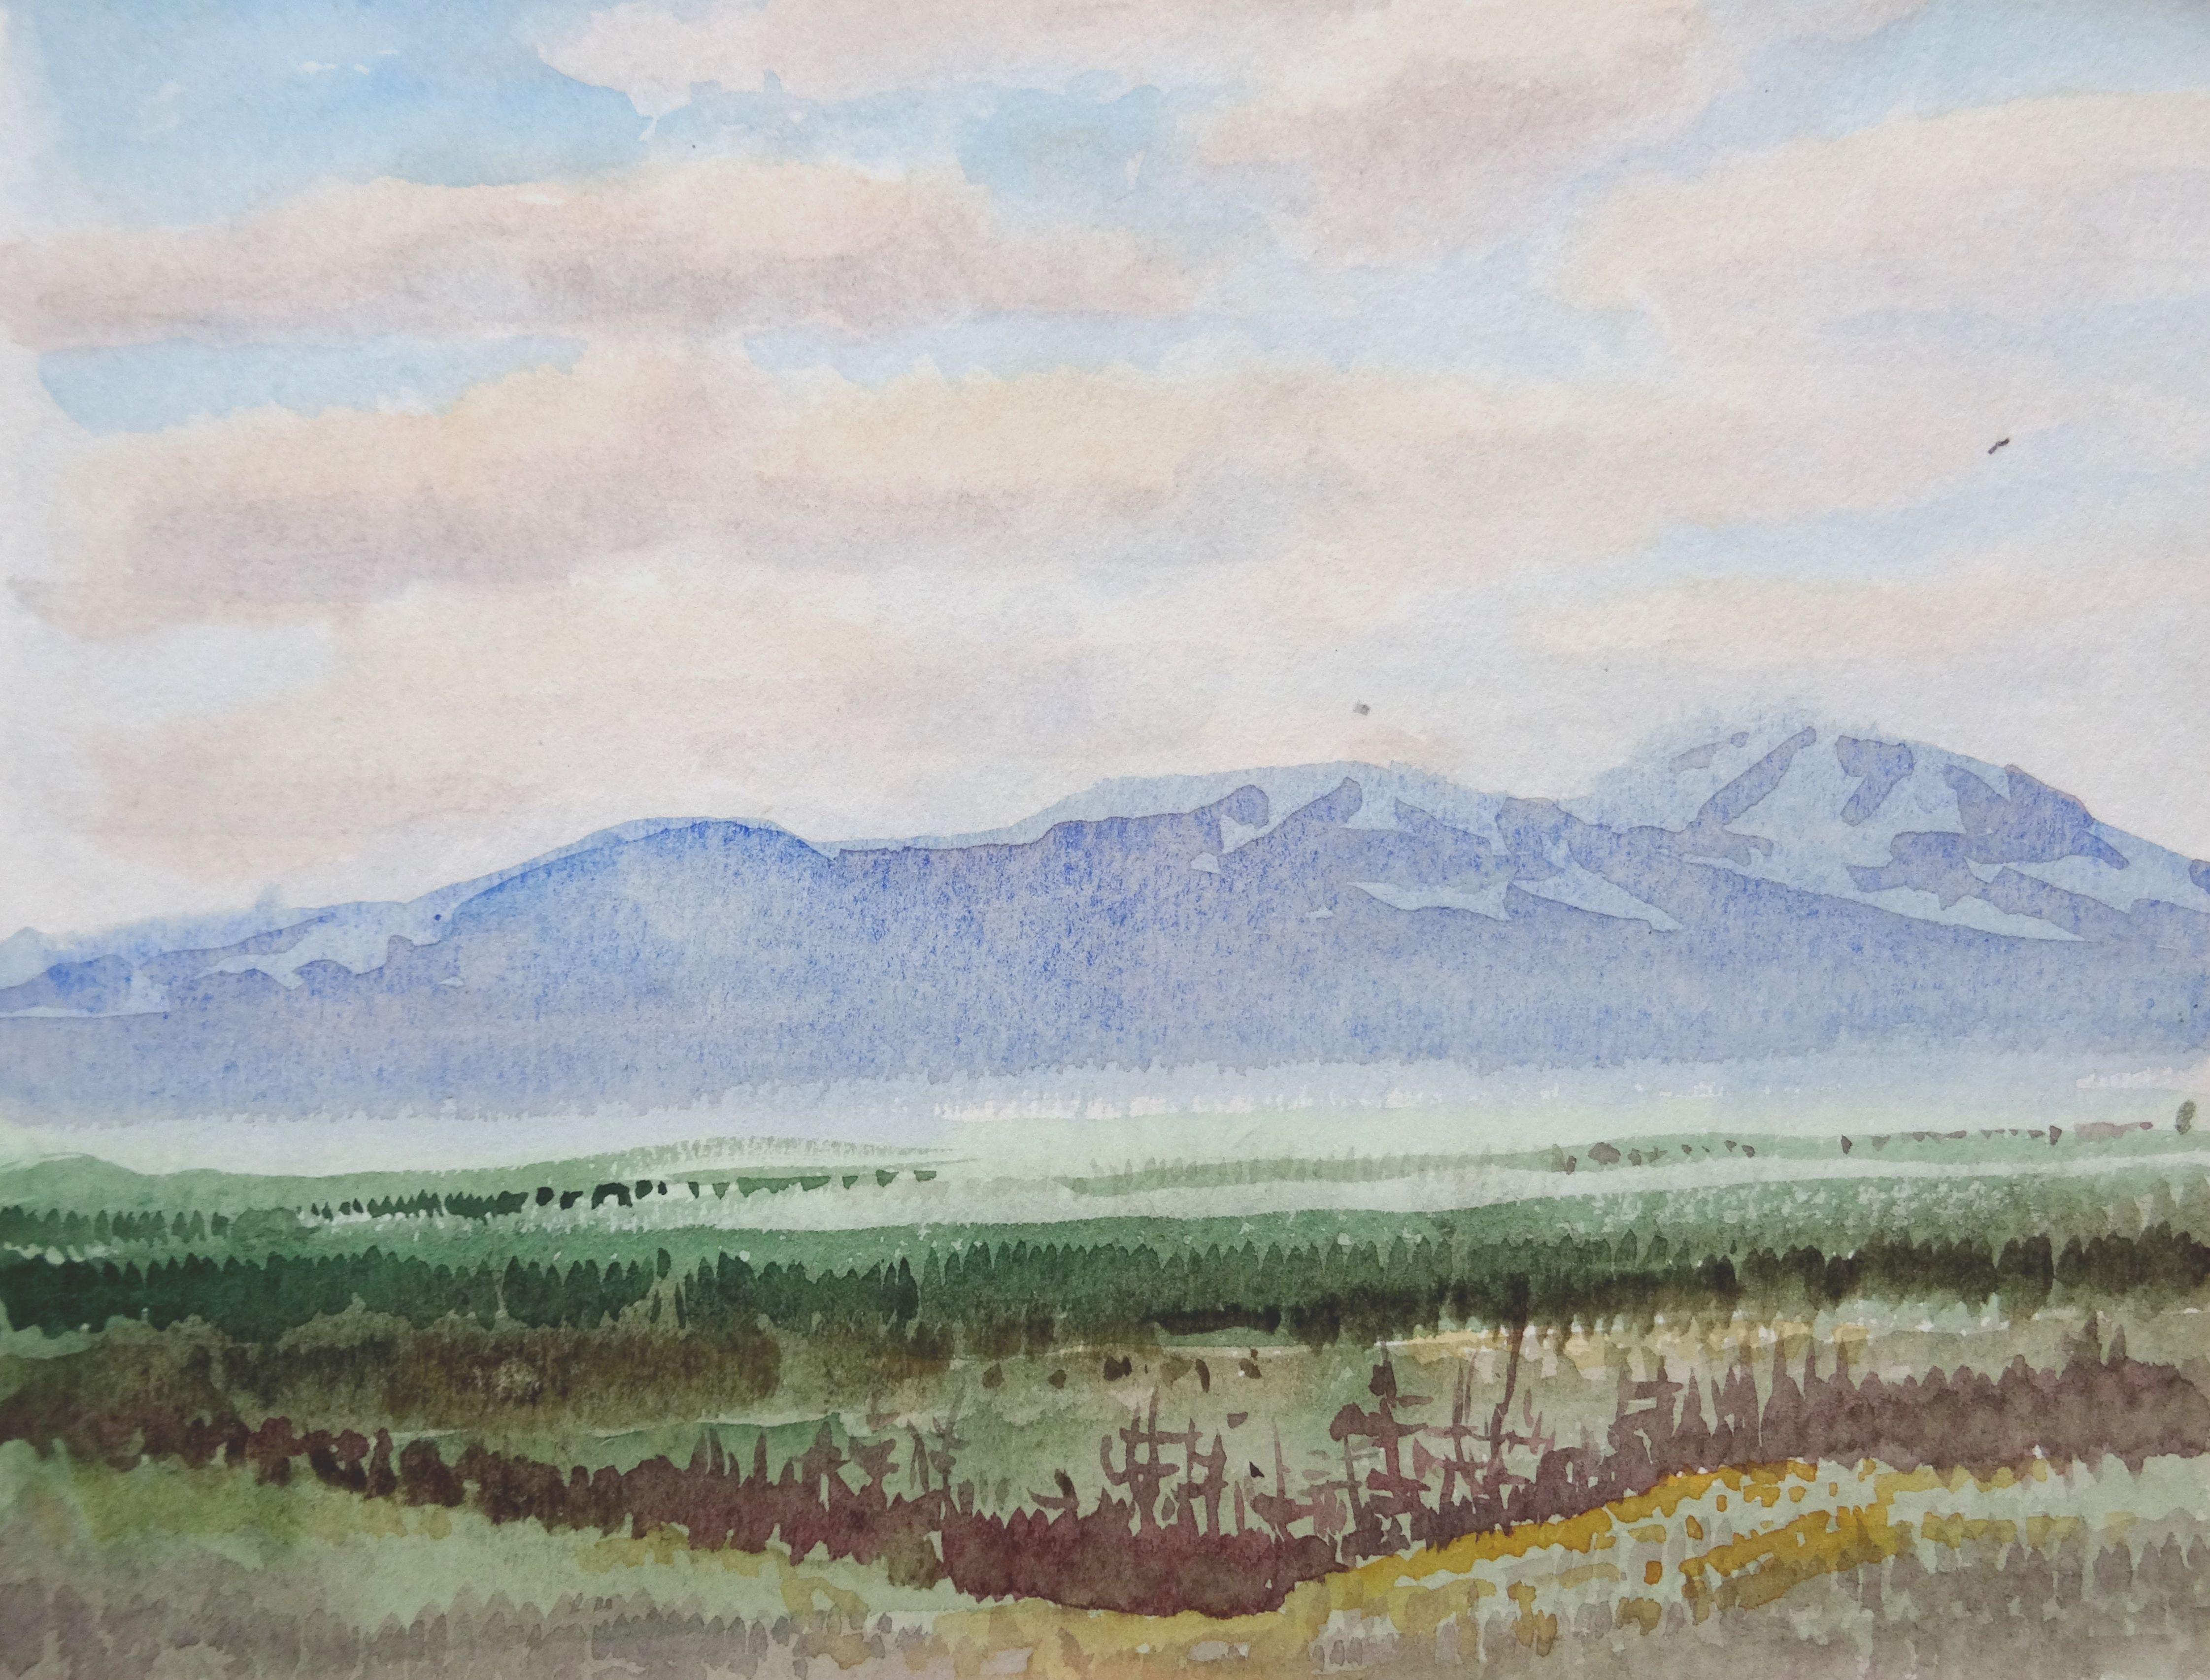 Herberts Mangolds Landscape Painting – Blauer Berg. 1975. Aquarell auf Papier, 14x19 cm